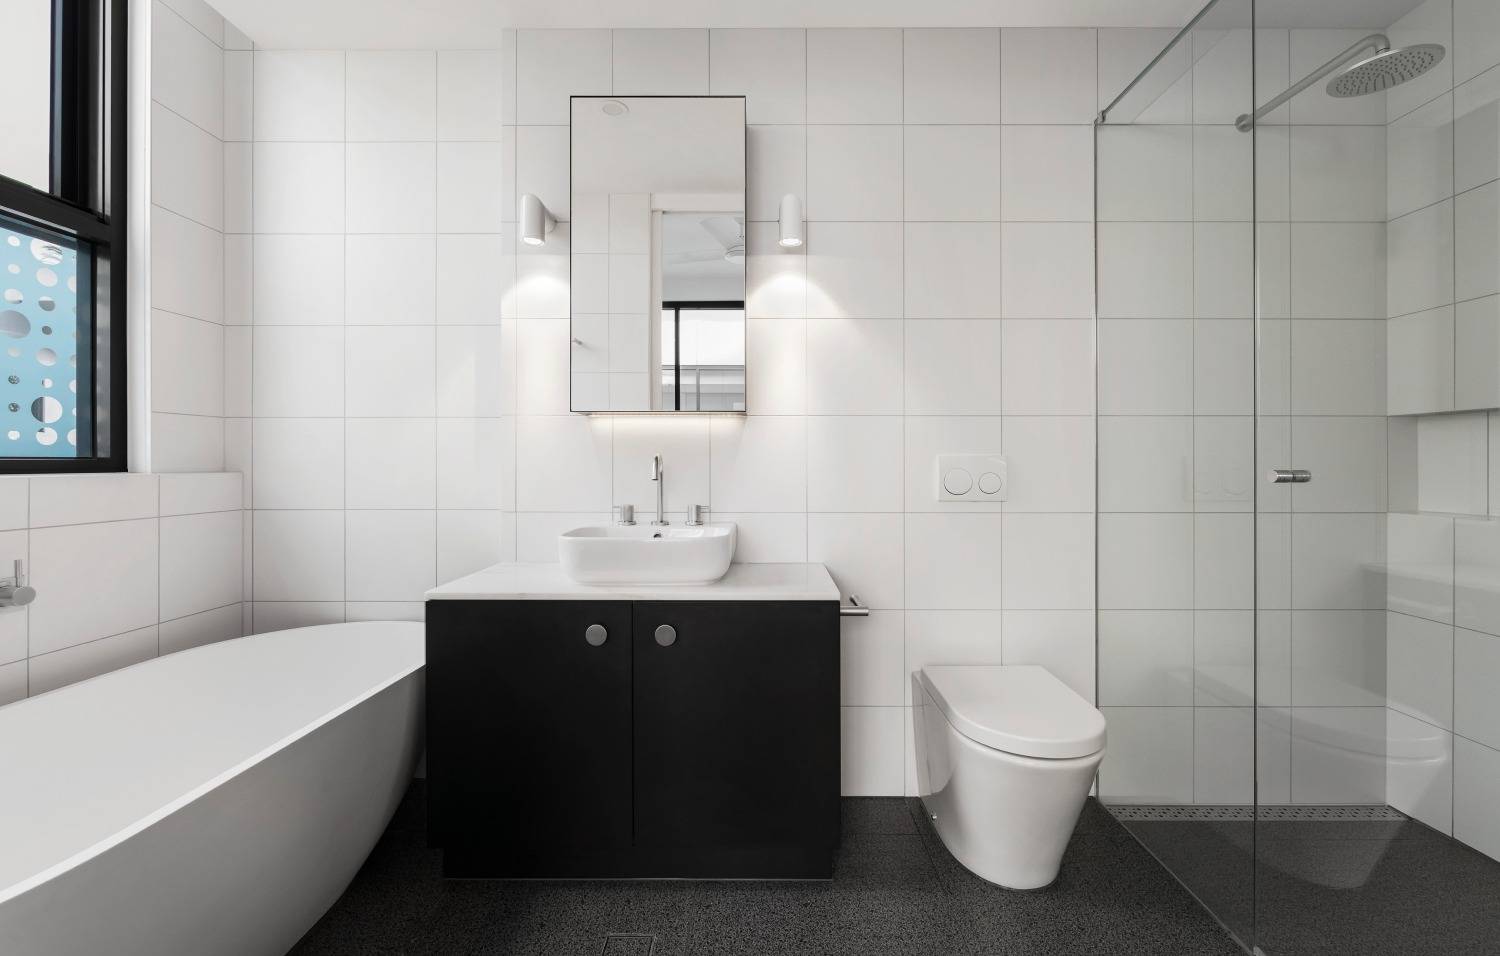 Moderni mustavalkoinen kylpyhuone. Oikealla sadesuihku ja lasiseinä, vasemmalla valkoinen kylpyamme.